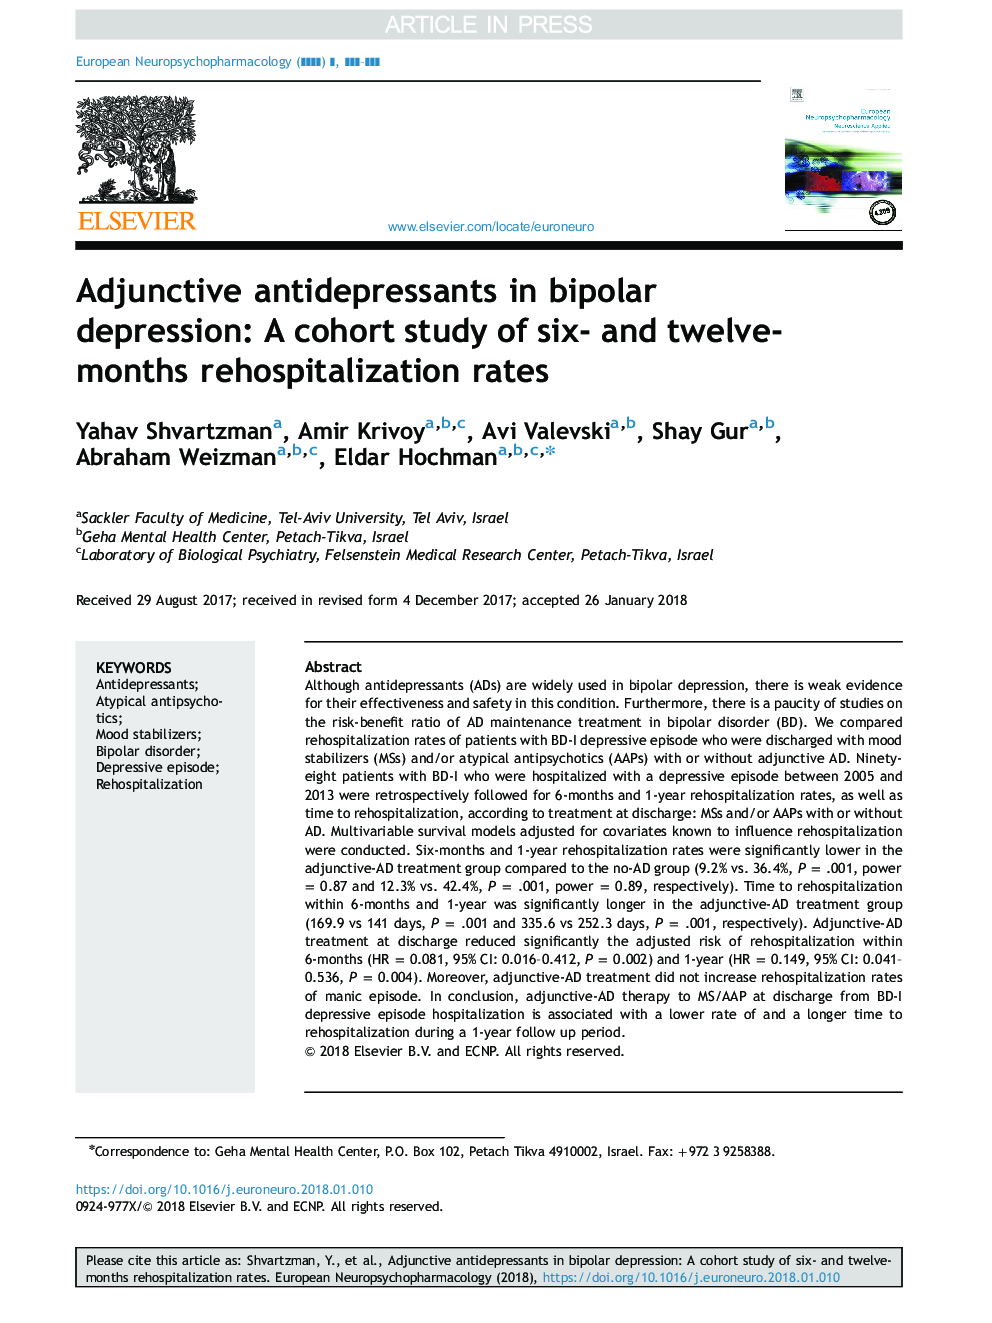 داروهای ضدافسردگی جانبی در افسردگی دوقطبی: مطالعه کوهورت از میزان شش و دوازده ماه مجدد 